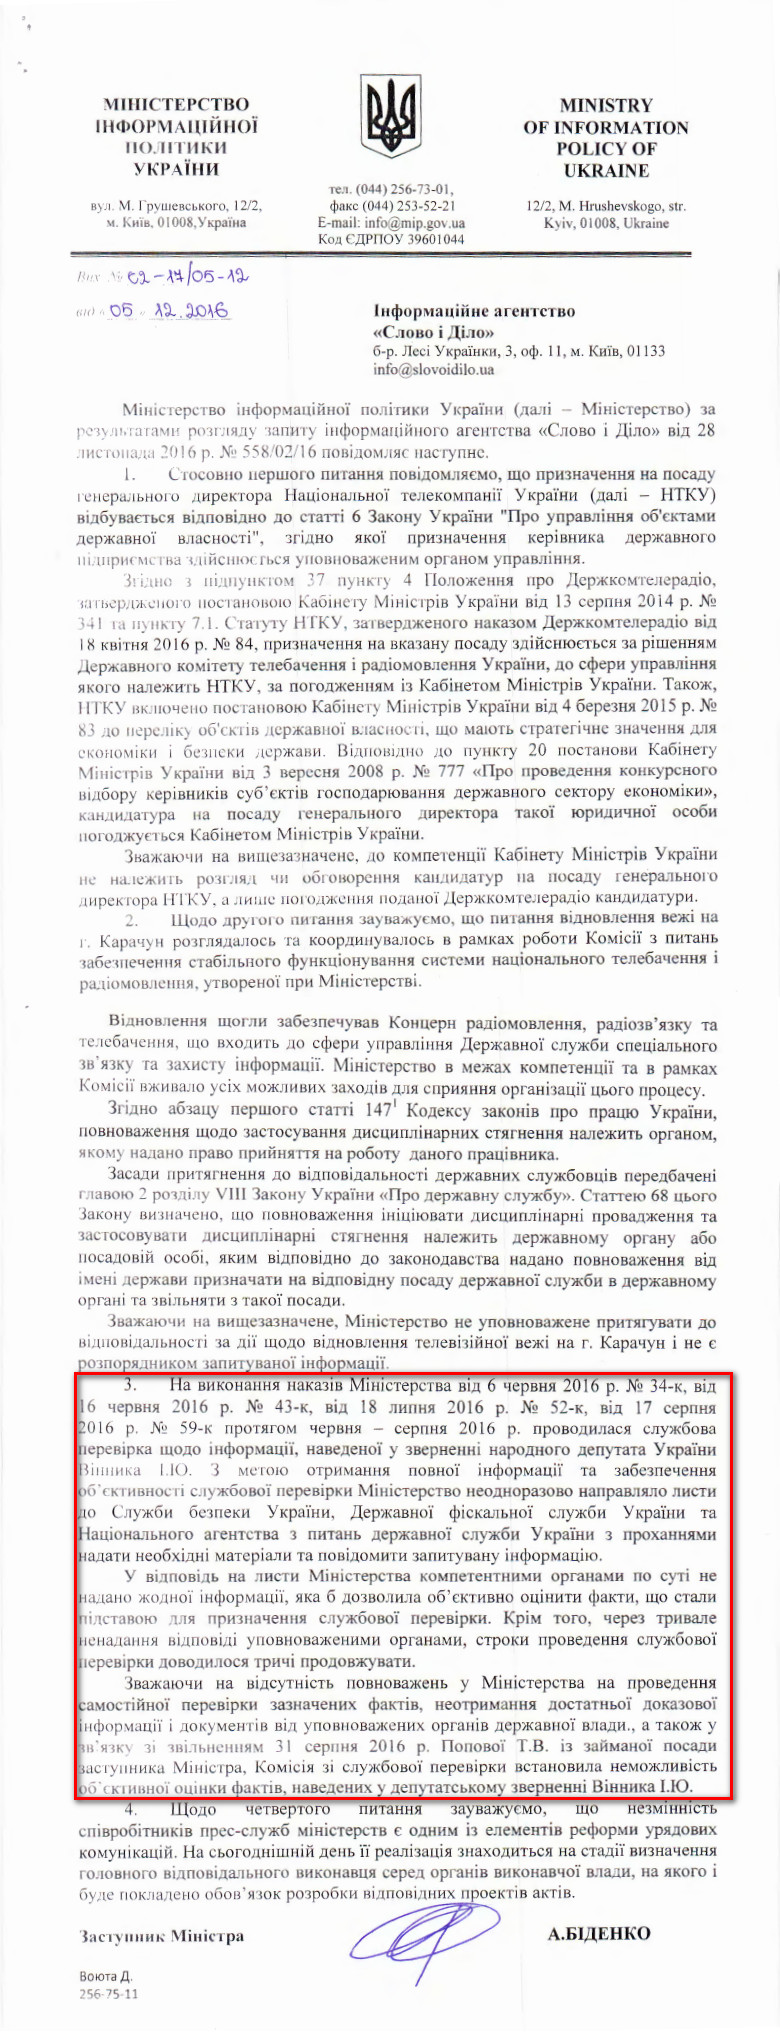 Лист заступника міністра інформаційної політики України Артема Біденка від 5 грудня 2016 року